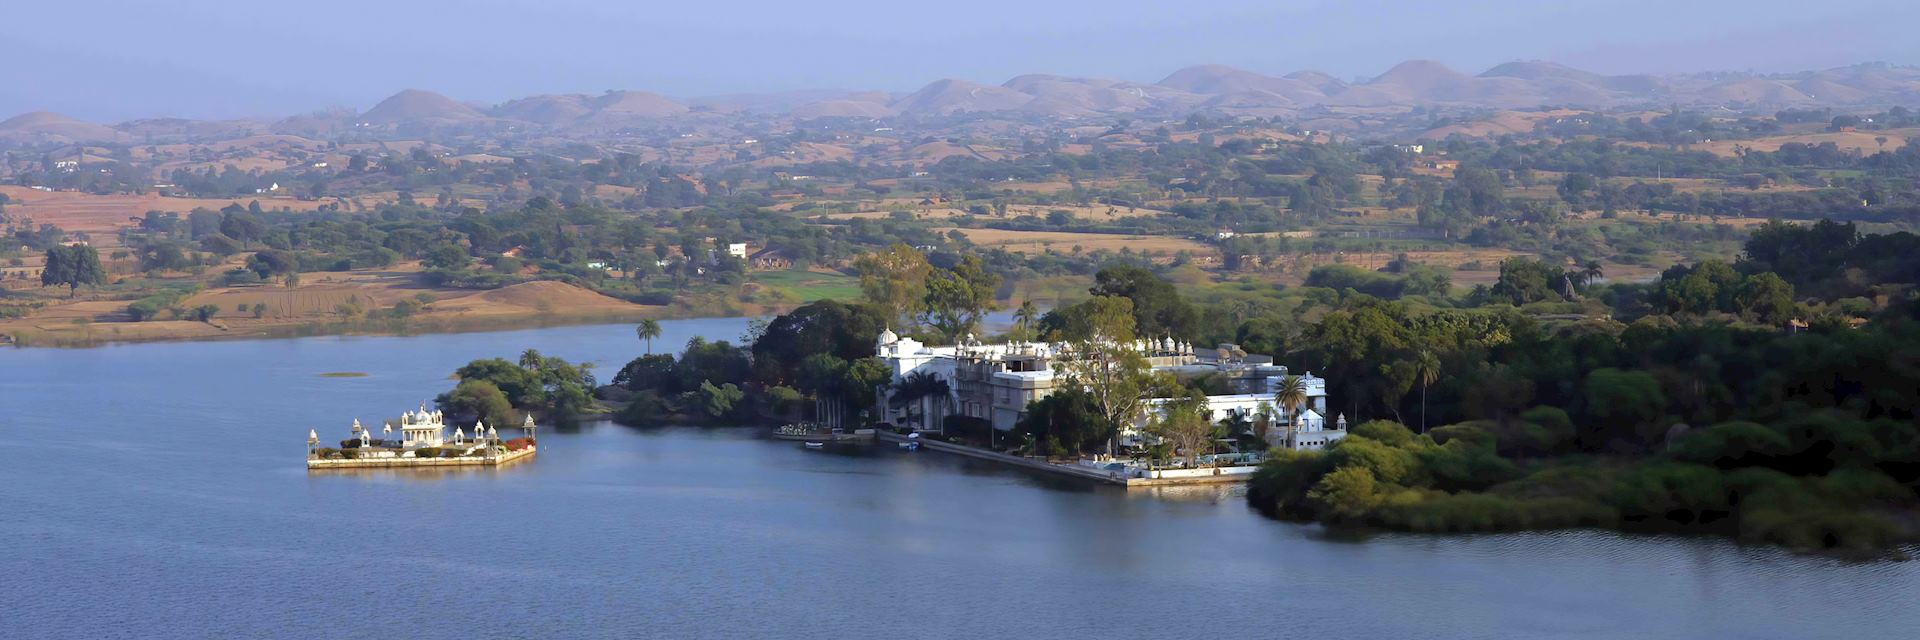 Aerial view of Udai Bilas Palace, Dungarpur